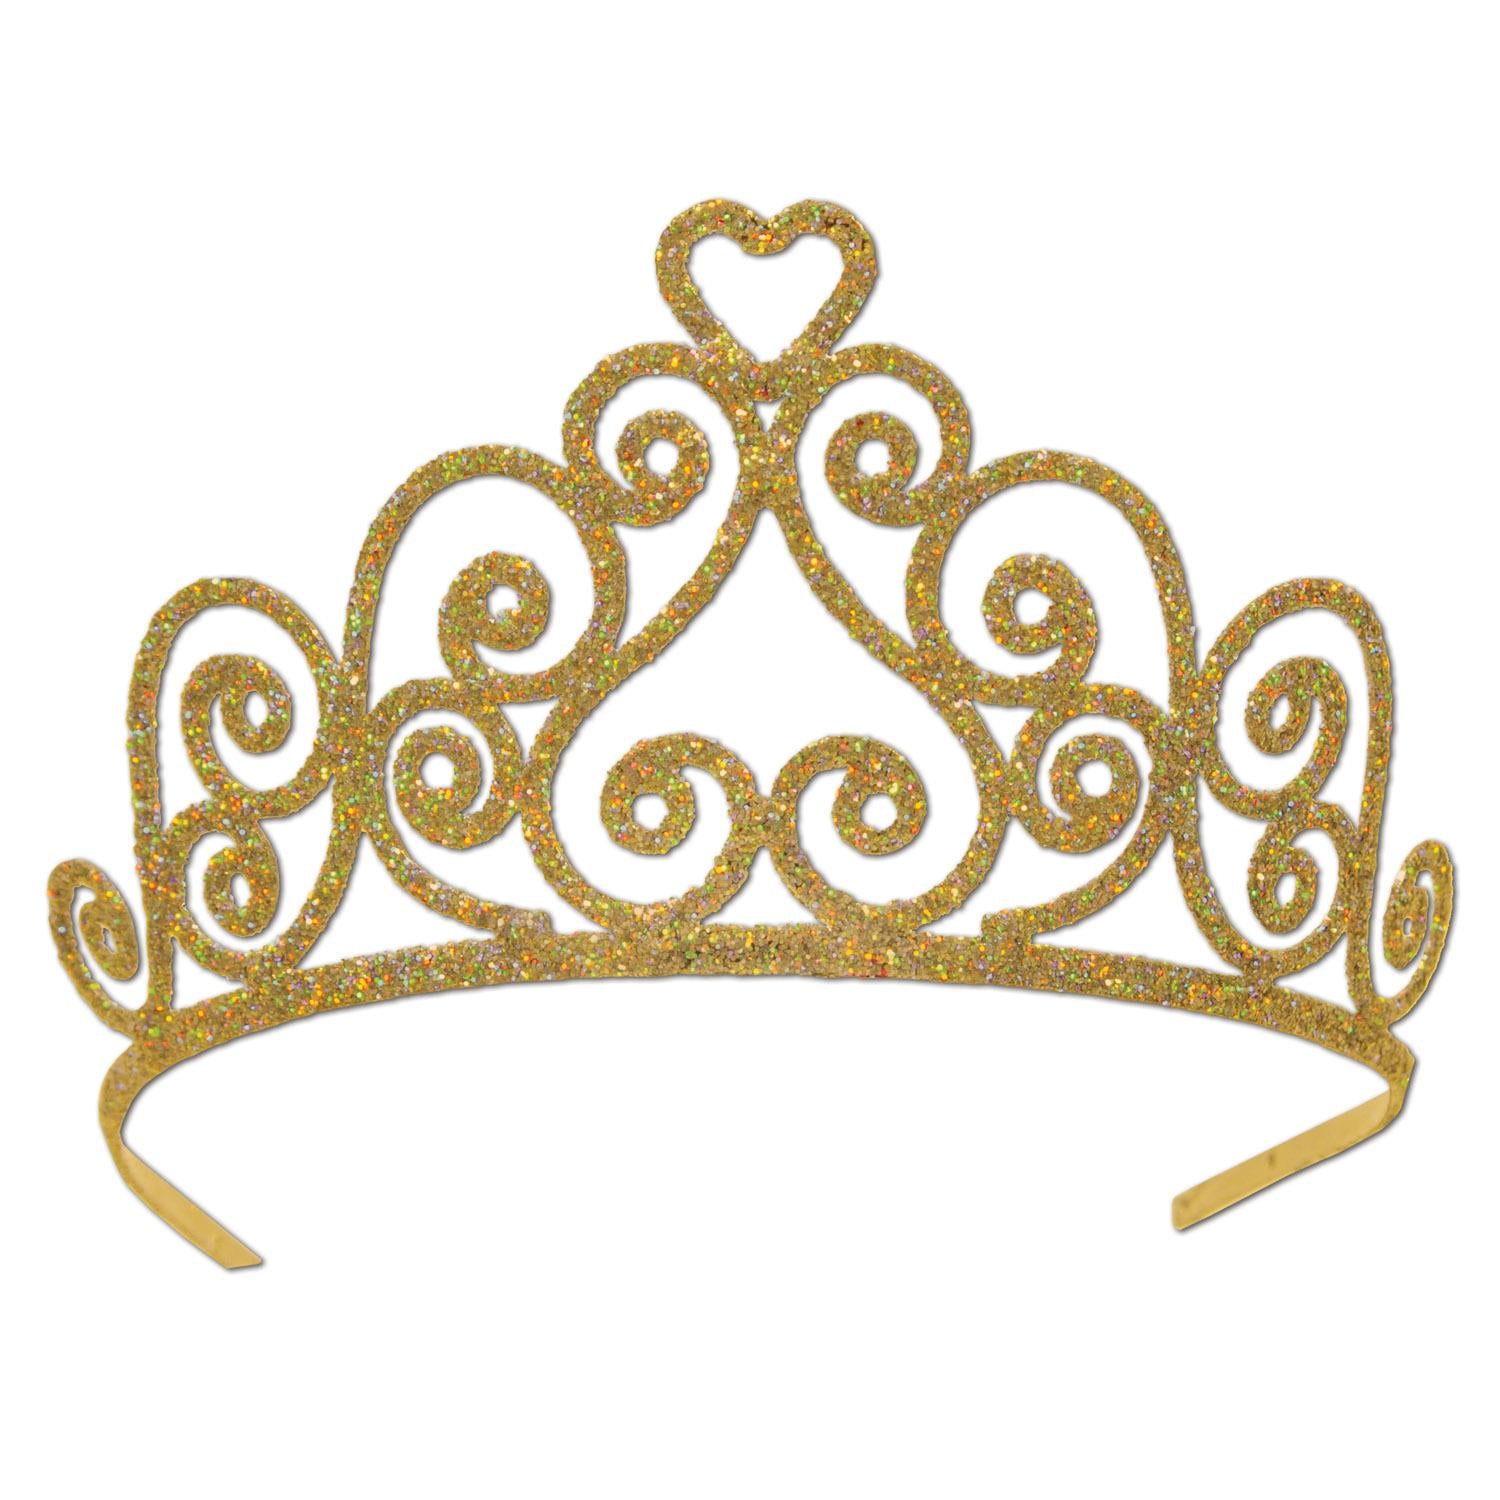 Beistle Glittered Metal Royal Tiara - Gold